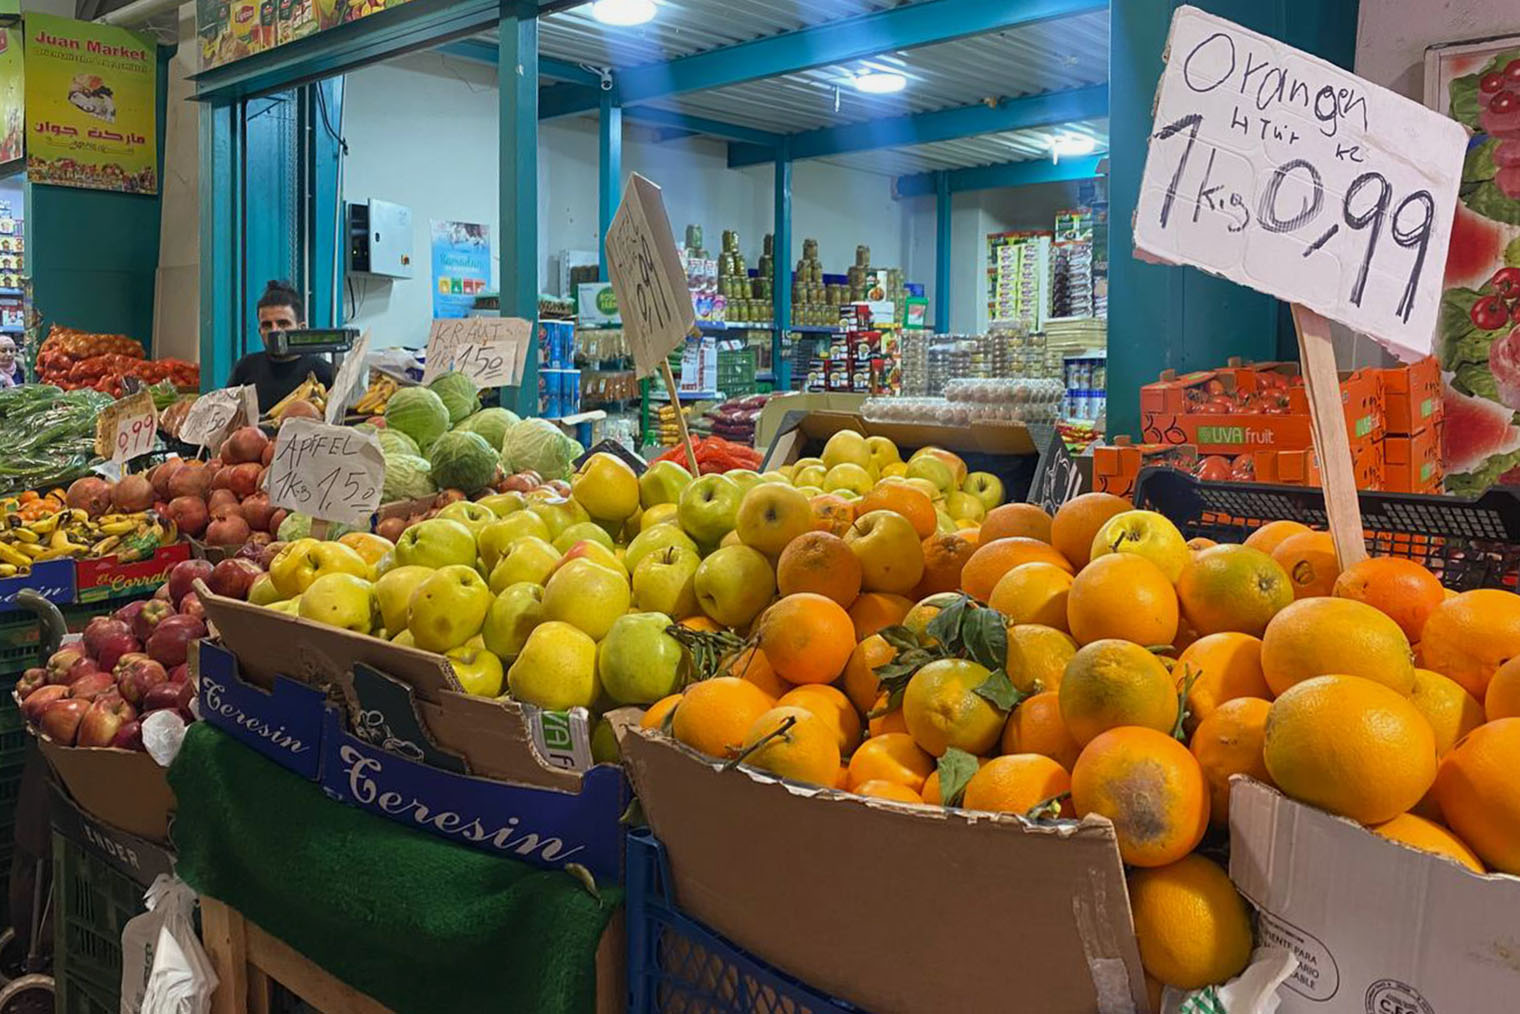 Яблоки и апельсины на рынке продают по 0,99 € за кг. Эти же продукты в магазине обойдутся в 2,49⁠—⁠2,99 € за кг